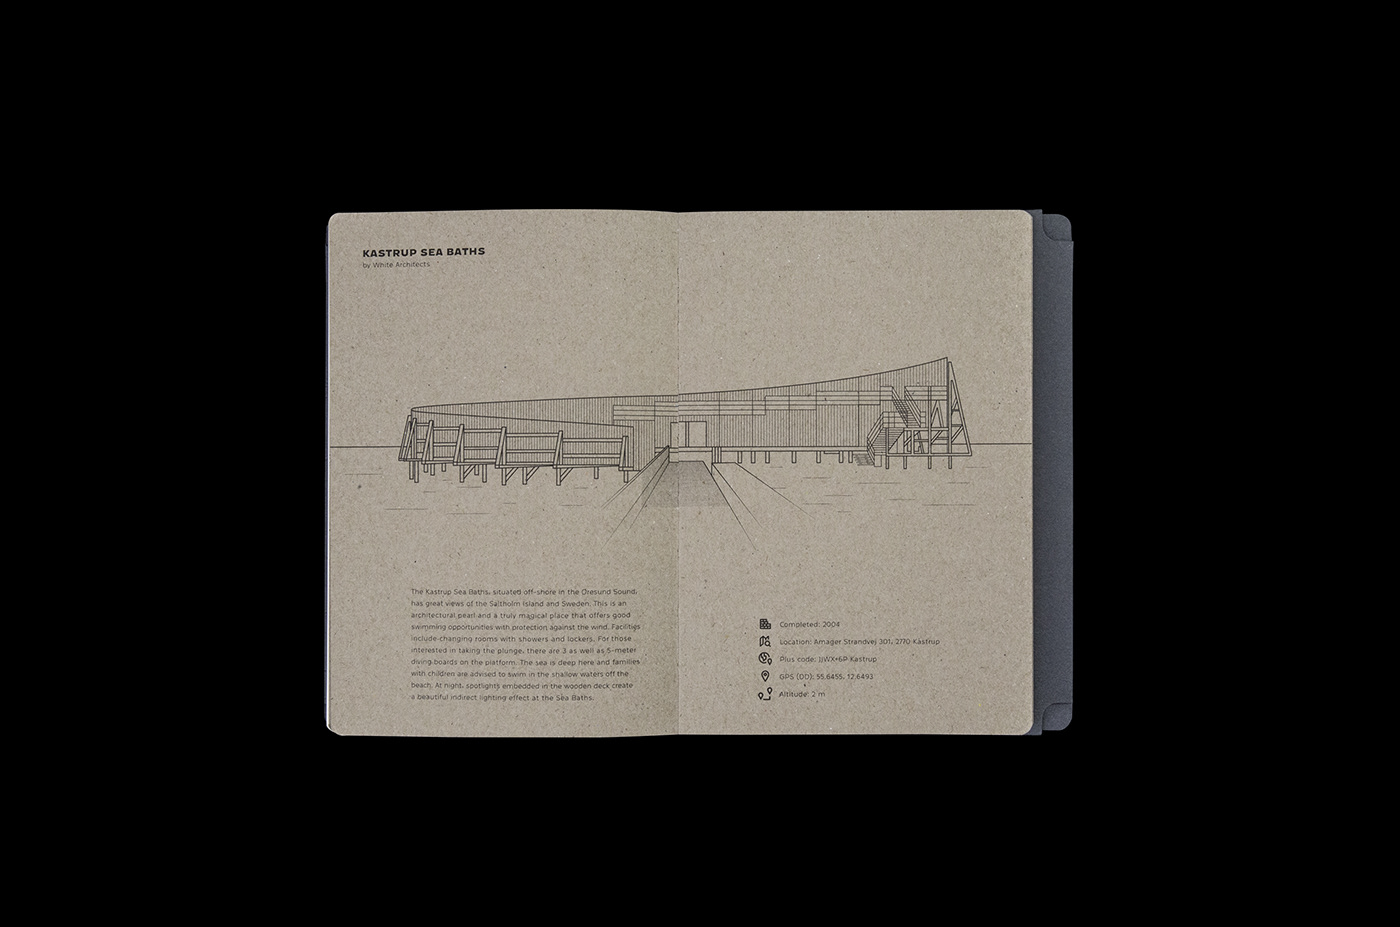 copenhagen editorial design explicit map print book ILLUSTRATION  buildings arhitecture